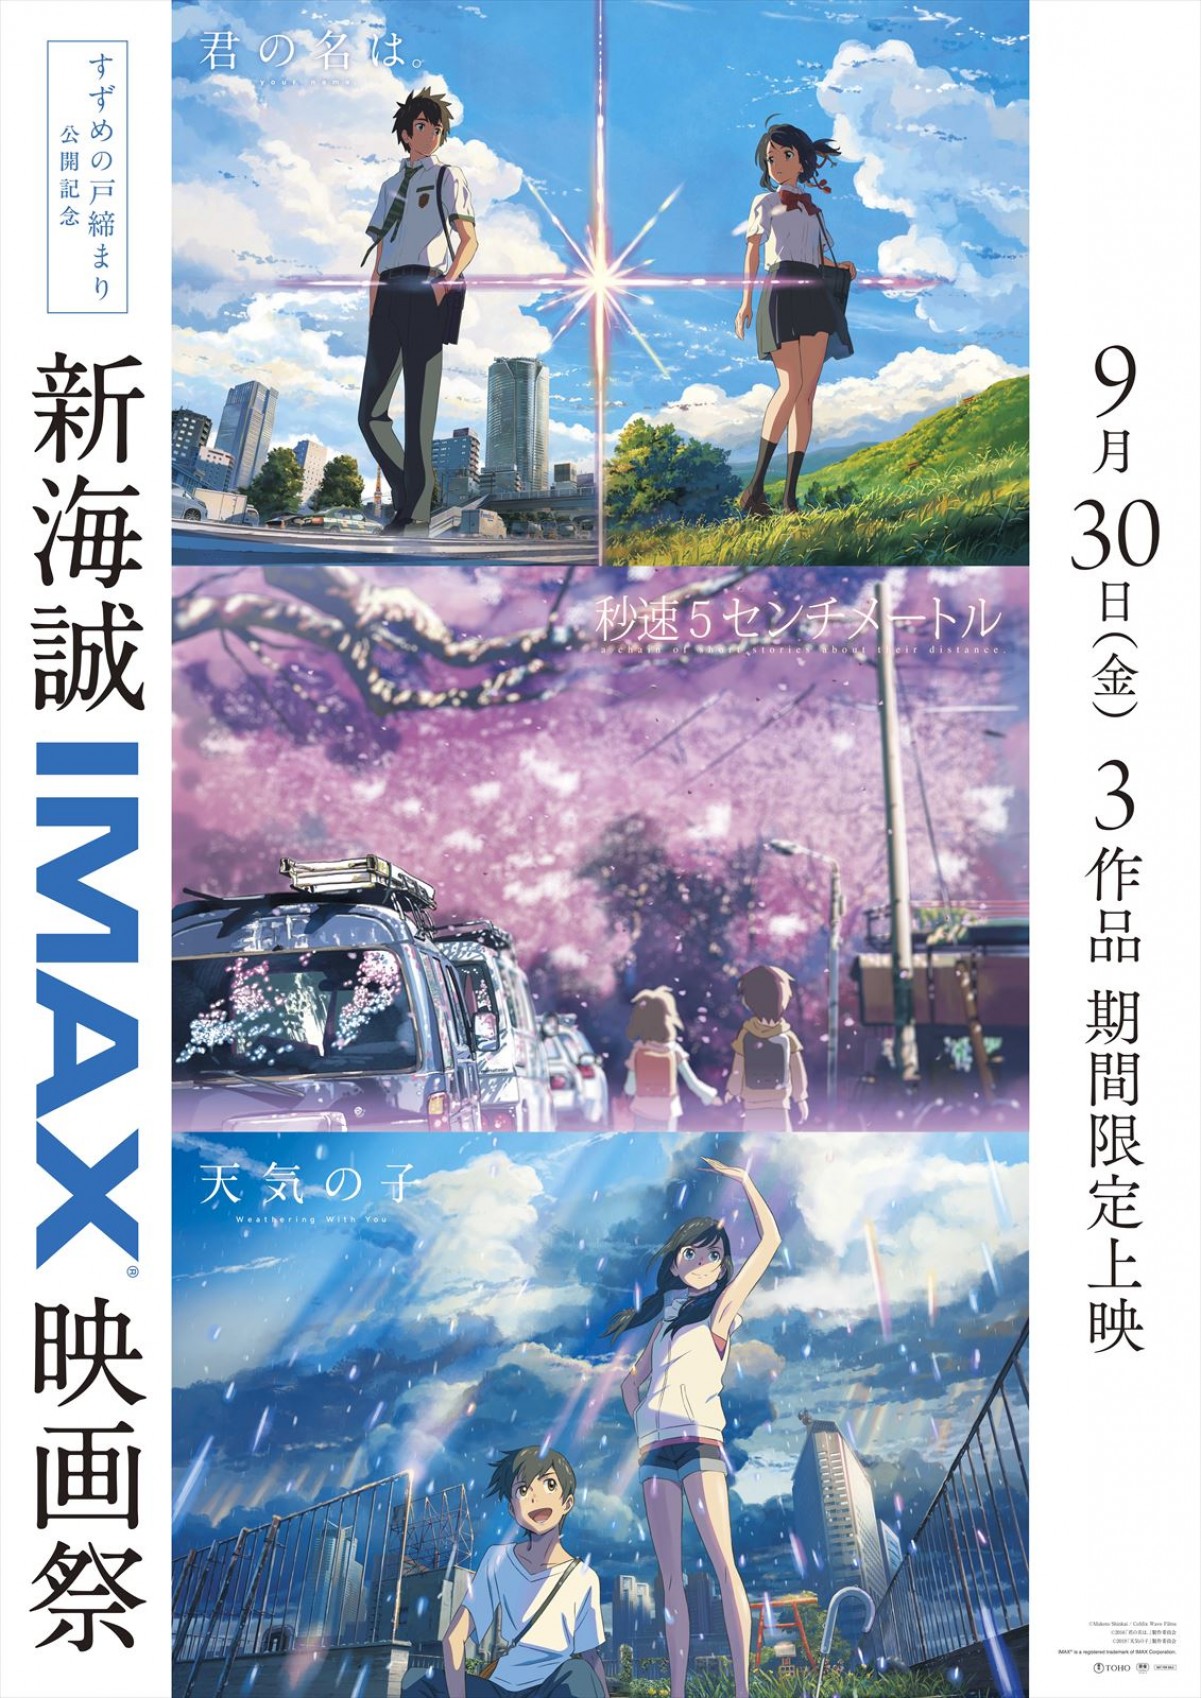 『すずめの戸締まり』IMAX上映決定　歴代新海誠作品がIMAX上映されるイベントも開催